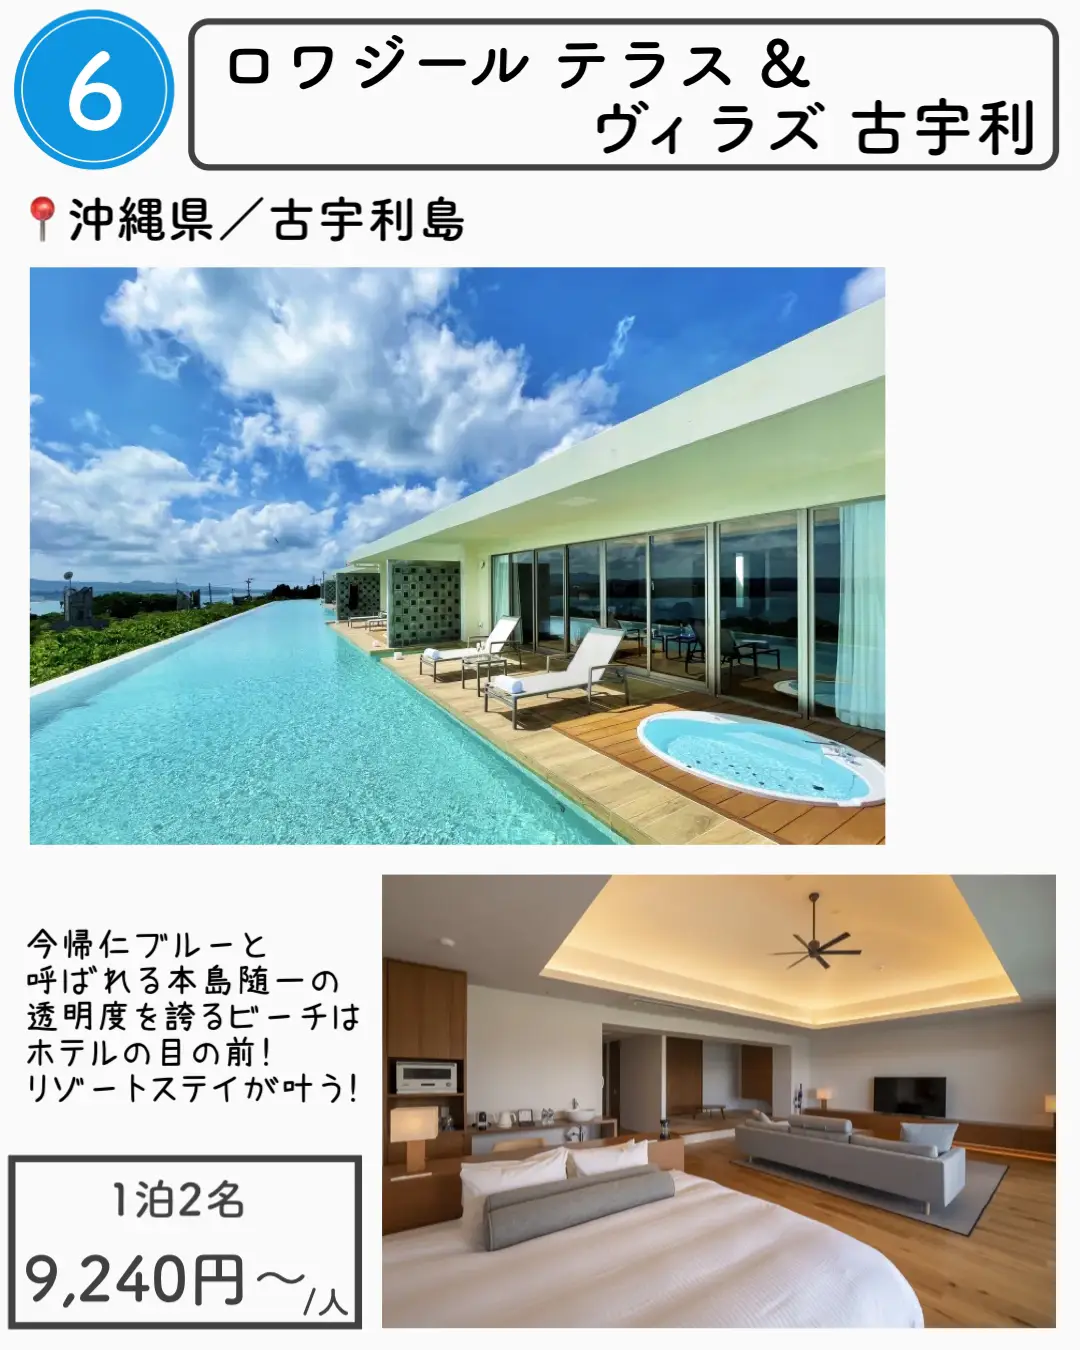 【沖縄】1万円以下で泊まれる沖縄ホテル7選の画像 (6枚目)